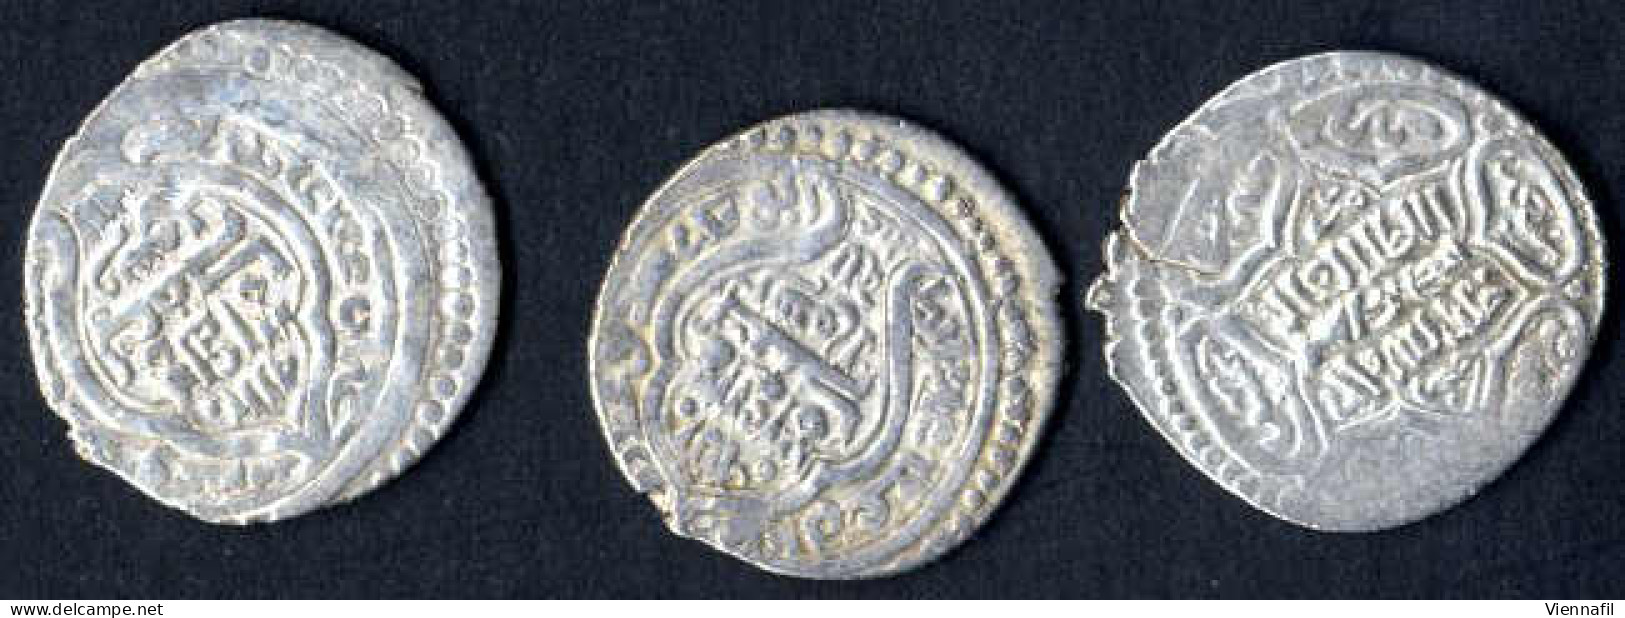 Sülaiman Khan, 740-744AH 1339-1343, Doppeldirham Silber, 741-744 Hisn, BMC Typ 319 332ff, Schön - Sehr Schön, 14 Stück - Islamiche